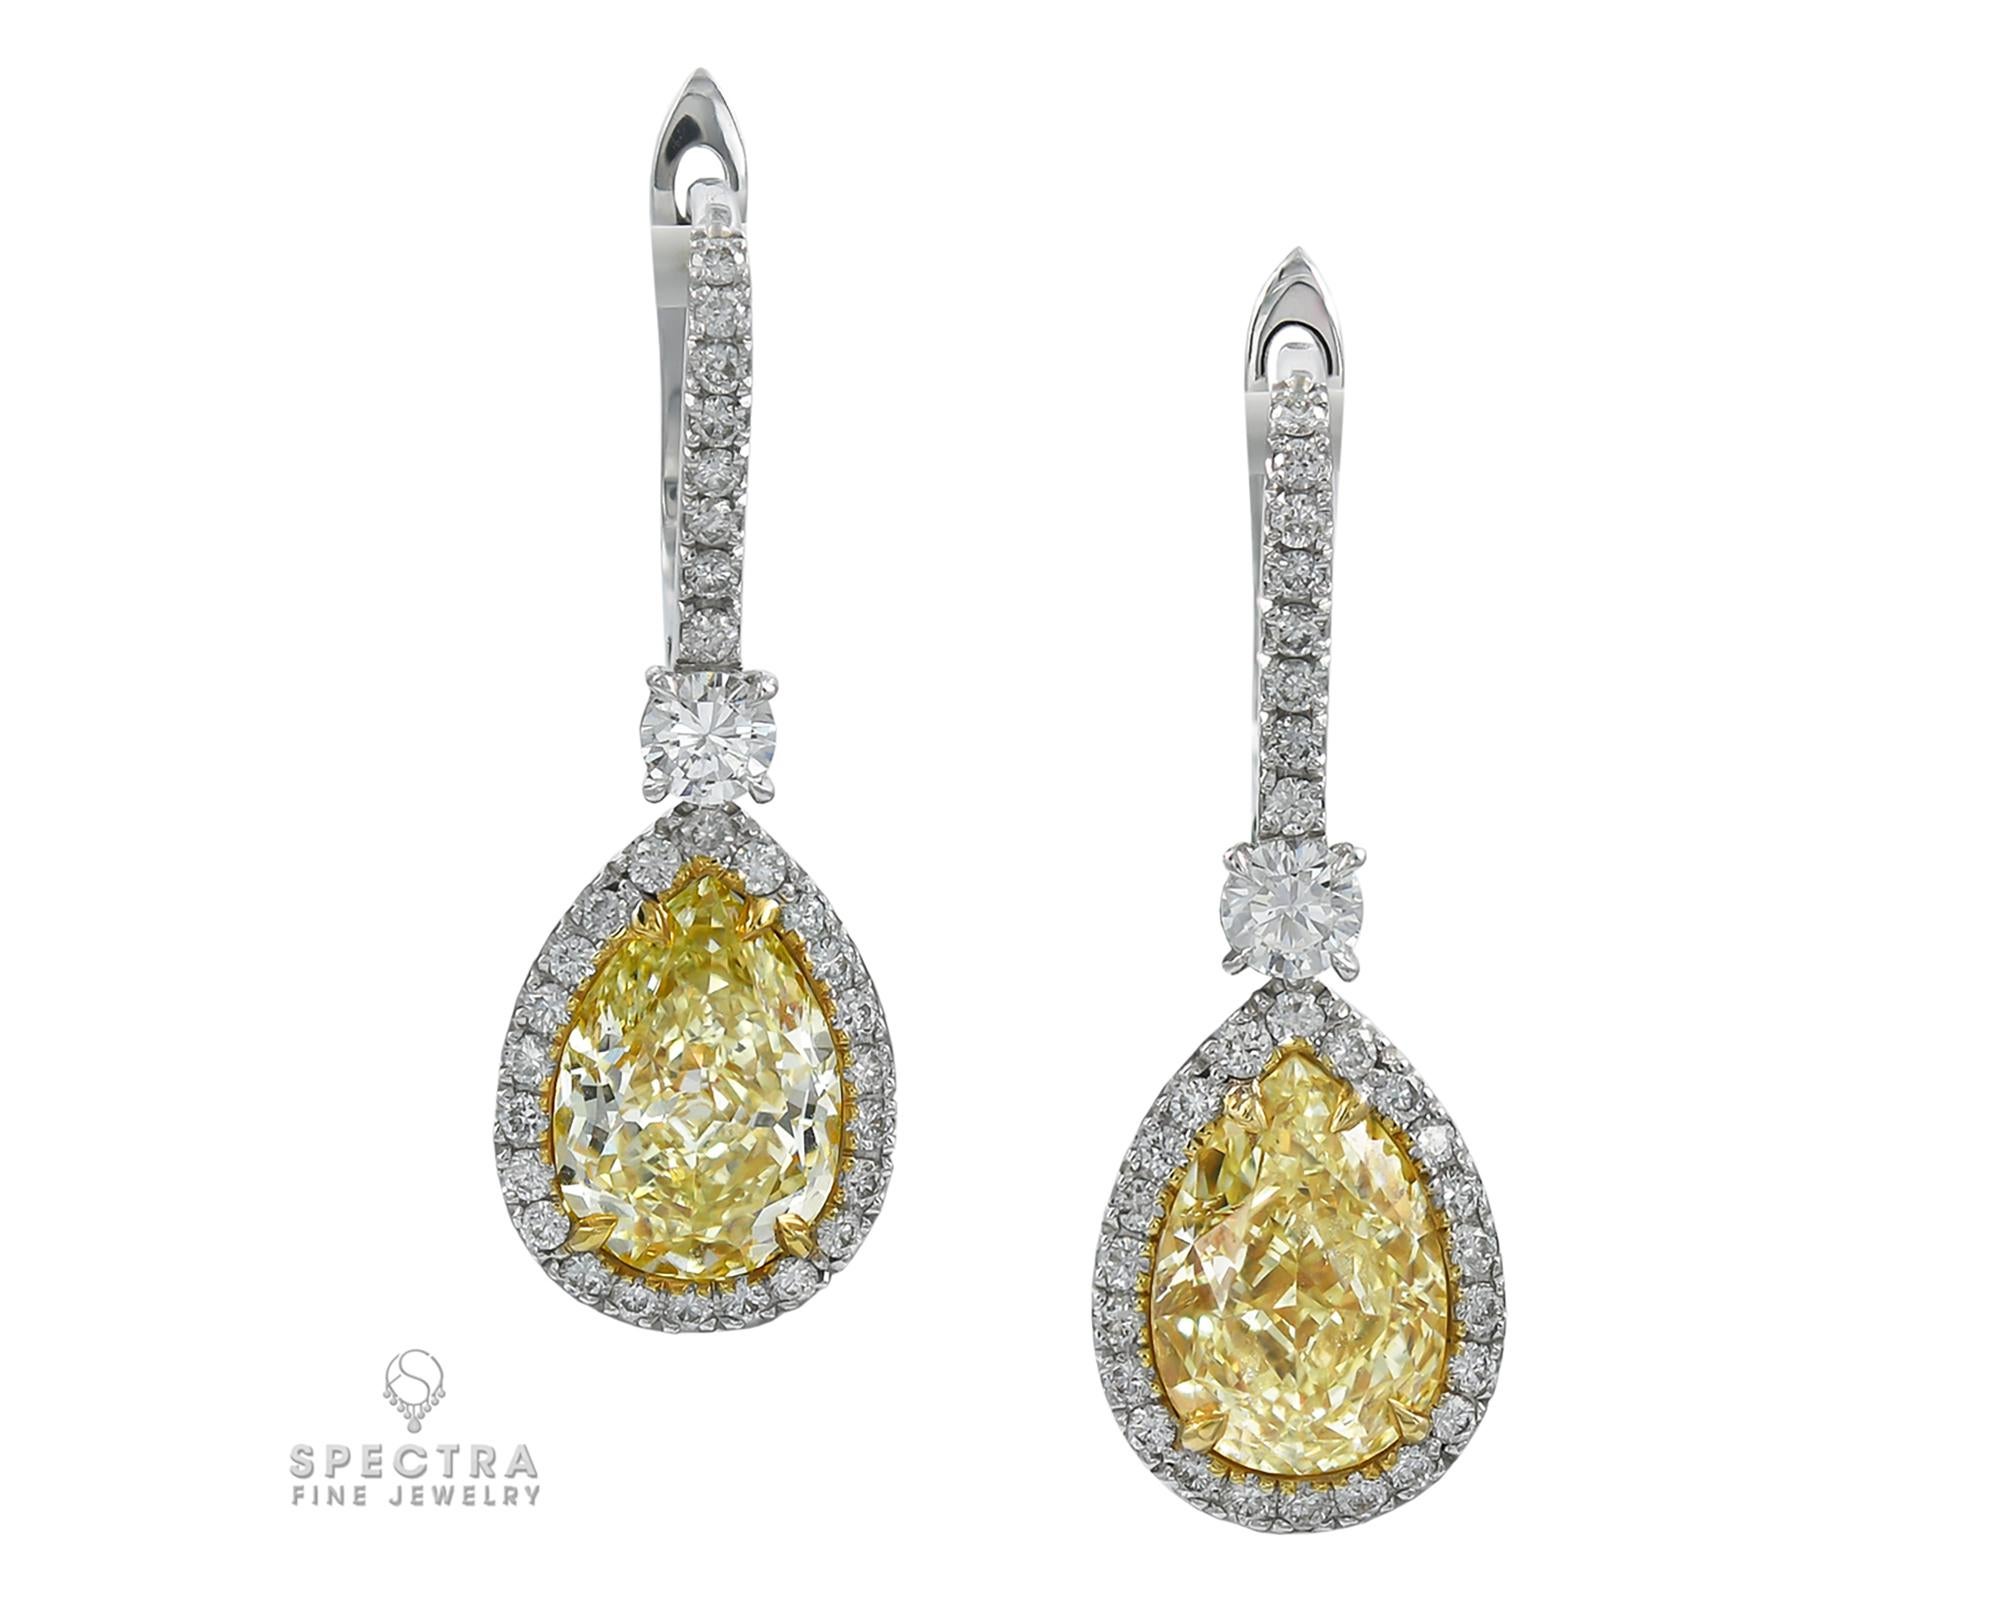 Pear Cut Spectra Fine Jewelry GIA Certified Yellow Diamond Halo Drop Earrings For Sale